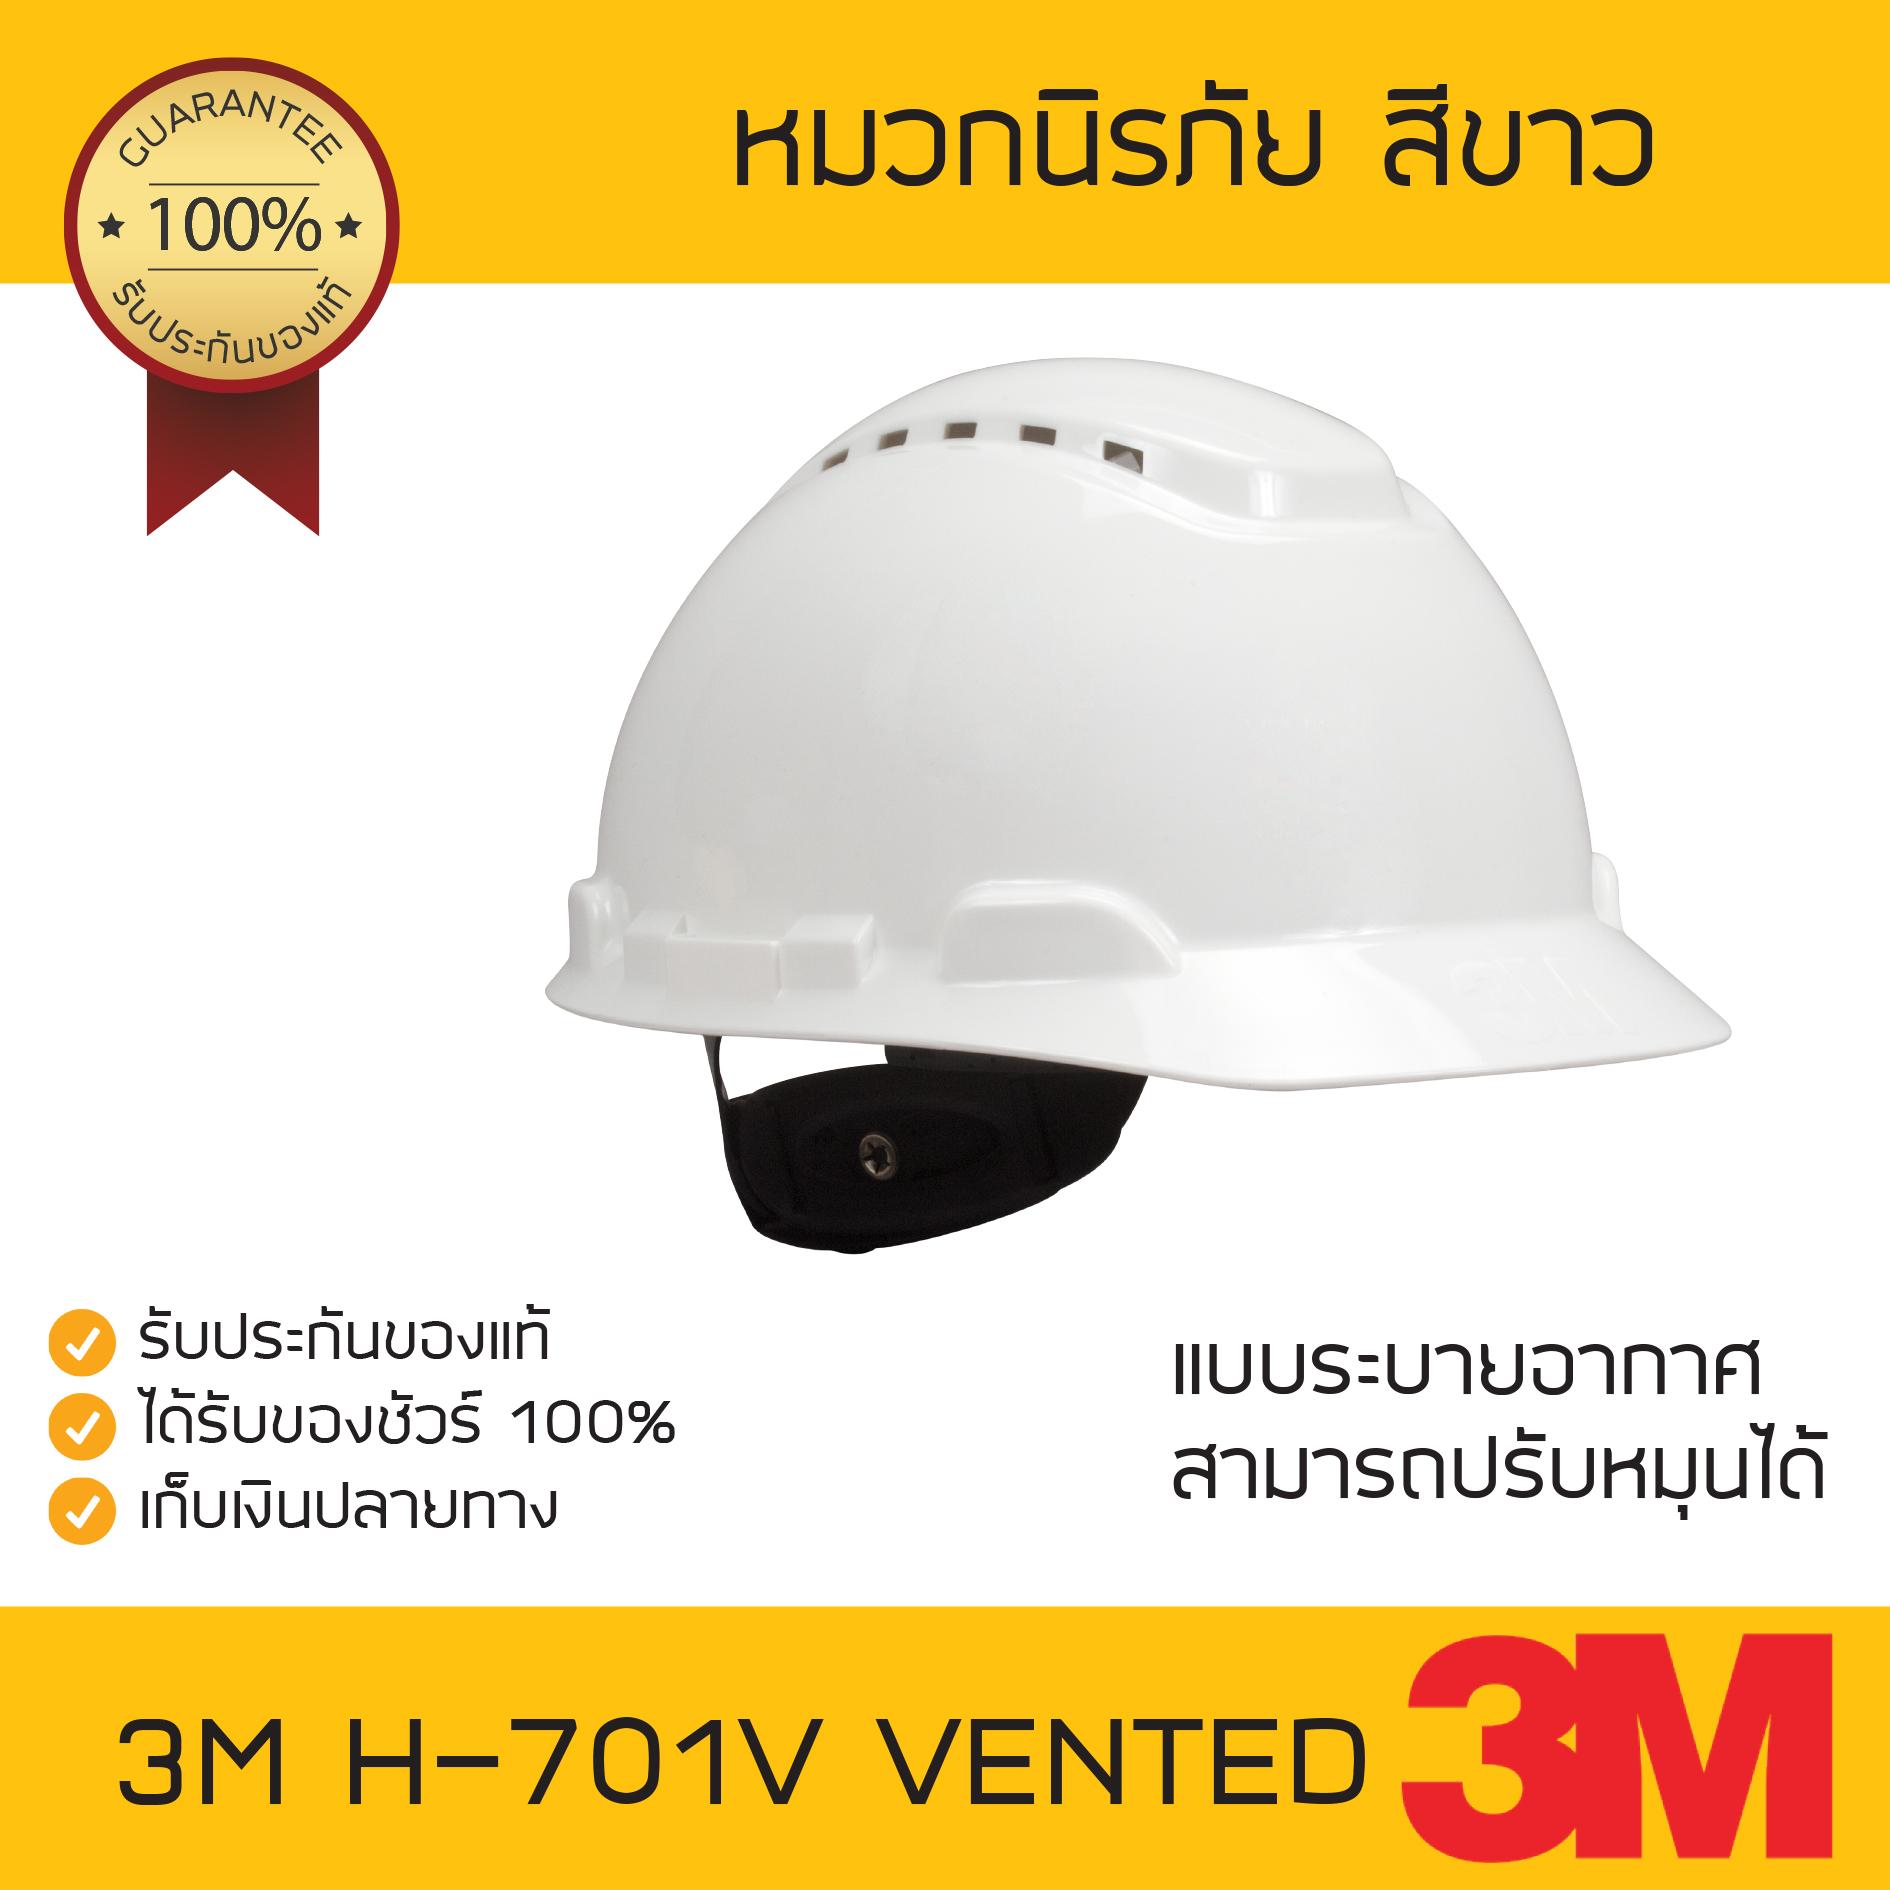 หมวกนิรภัย 3M H-701V ปรับหมุน สีขาว แบบมีรูระบาย